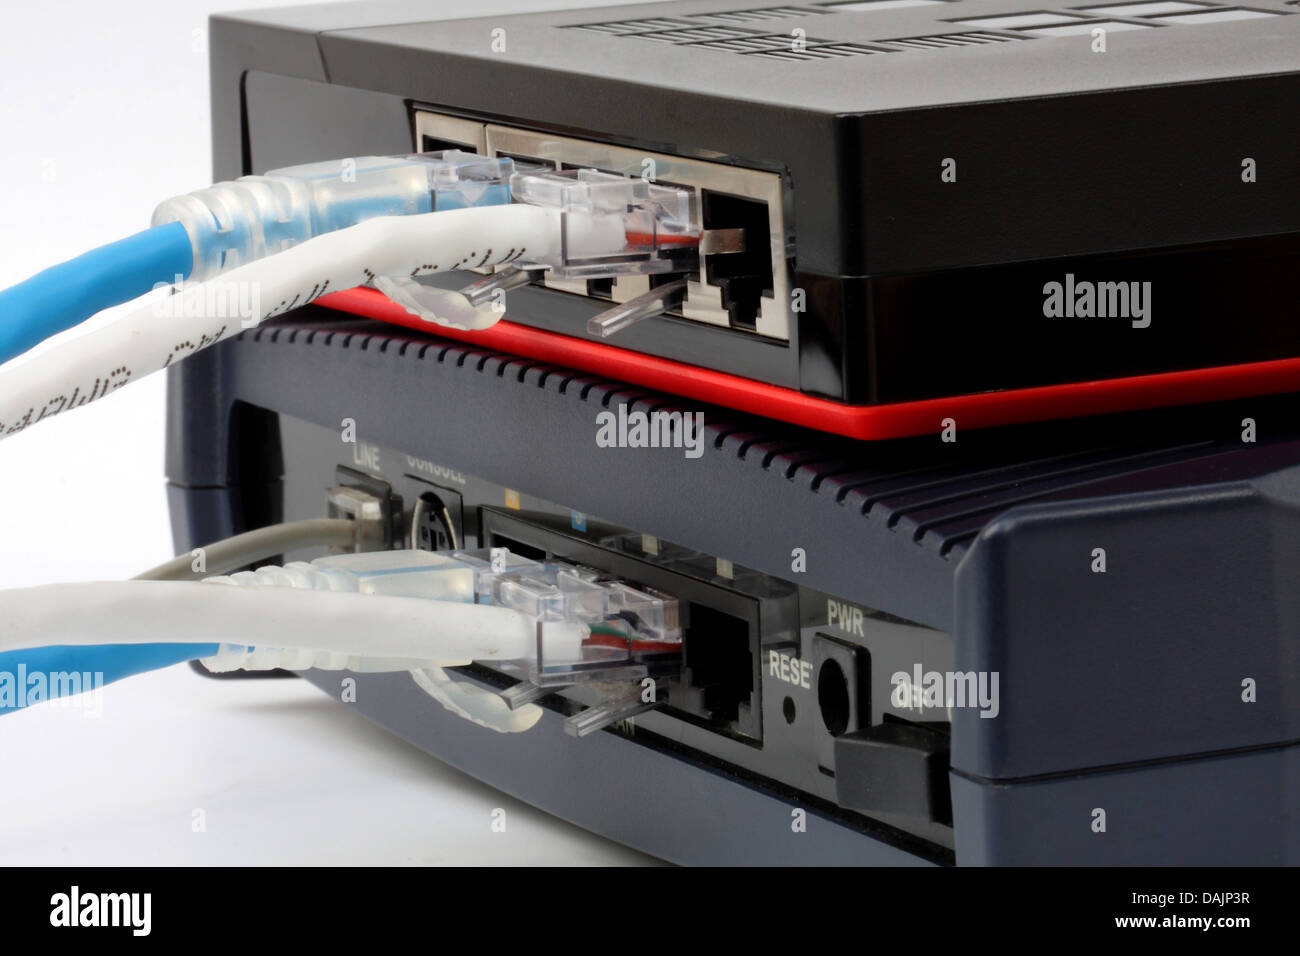 Ethernet-Switch isoliert und Modem-Router verbinden Lan auf dem weißen Hintergrund Stockfoto